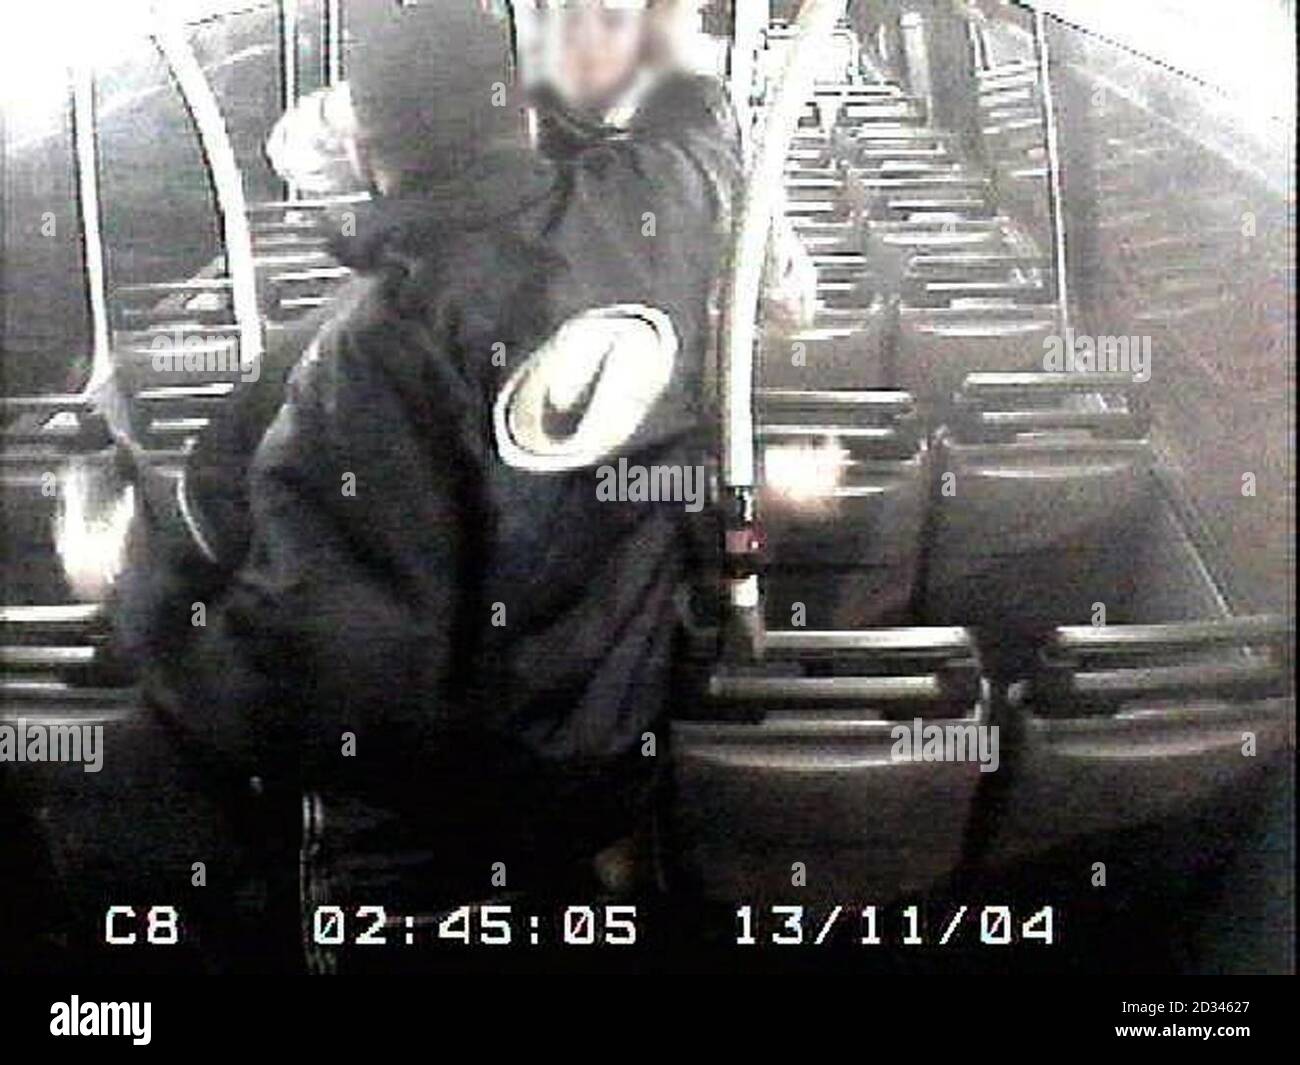 La police de Métroplitan a publié des images de vidéosurveillance faisant appel à des témoins et à des informations à la suite d'un incident dans lequel un homme blanc de la fin de la vingtaine avait vaporisé de l'essence sur son visage et a été mis à feu dans un bus par un homme noir à la fin de son adolescence.l'incident s'est produit vers 02:30 le samedi 13/11/04 Sur le bus N16 de Victoria à Edgware, comme il passait par High Street, Edgware. CCTV obtenu de l'autobus montre qu'il y a eu une perturbation entre trois ou quatre mâles blancs à l'étage sur l'autobus. Un homme noir de son adolescence, qui dormait sur le siège arrière du pont supérieur du bus, était réveillé Banque D'Images